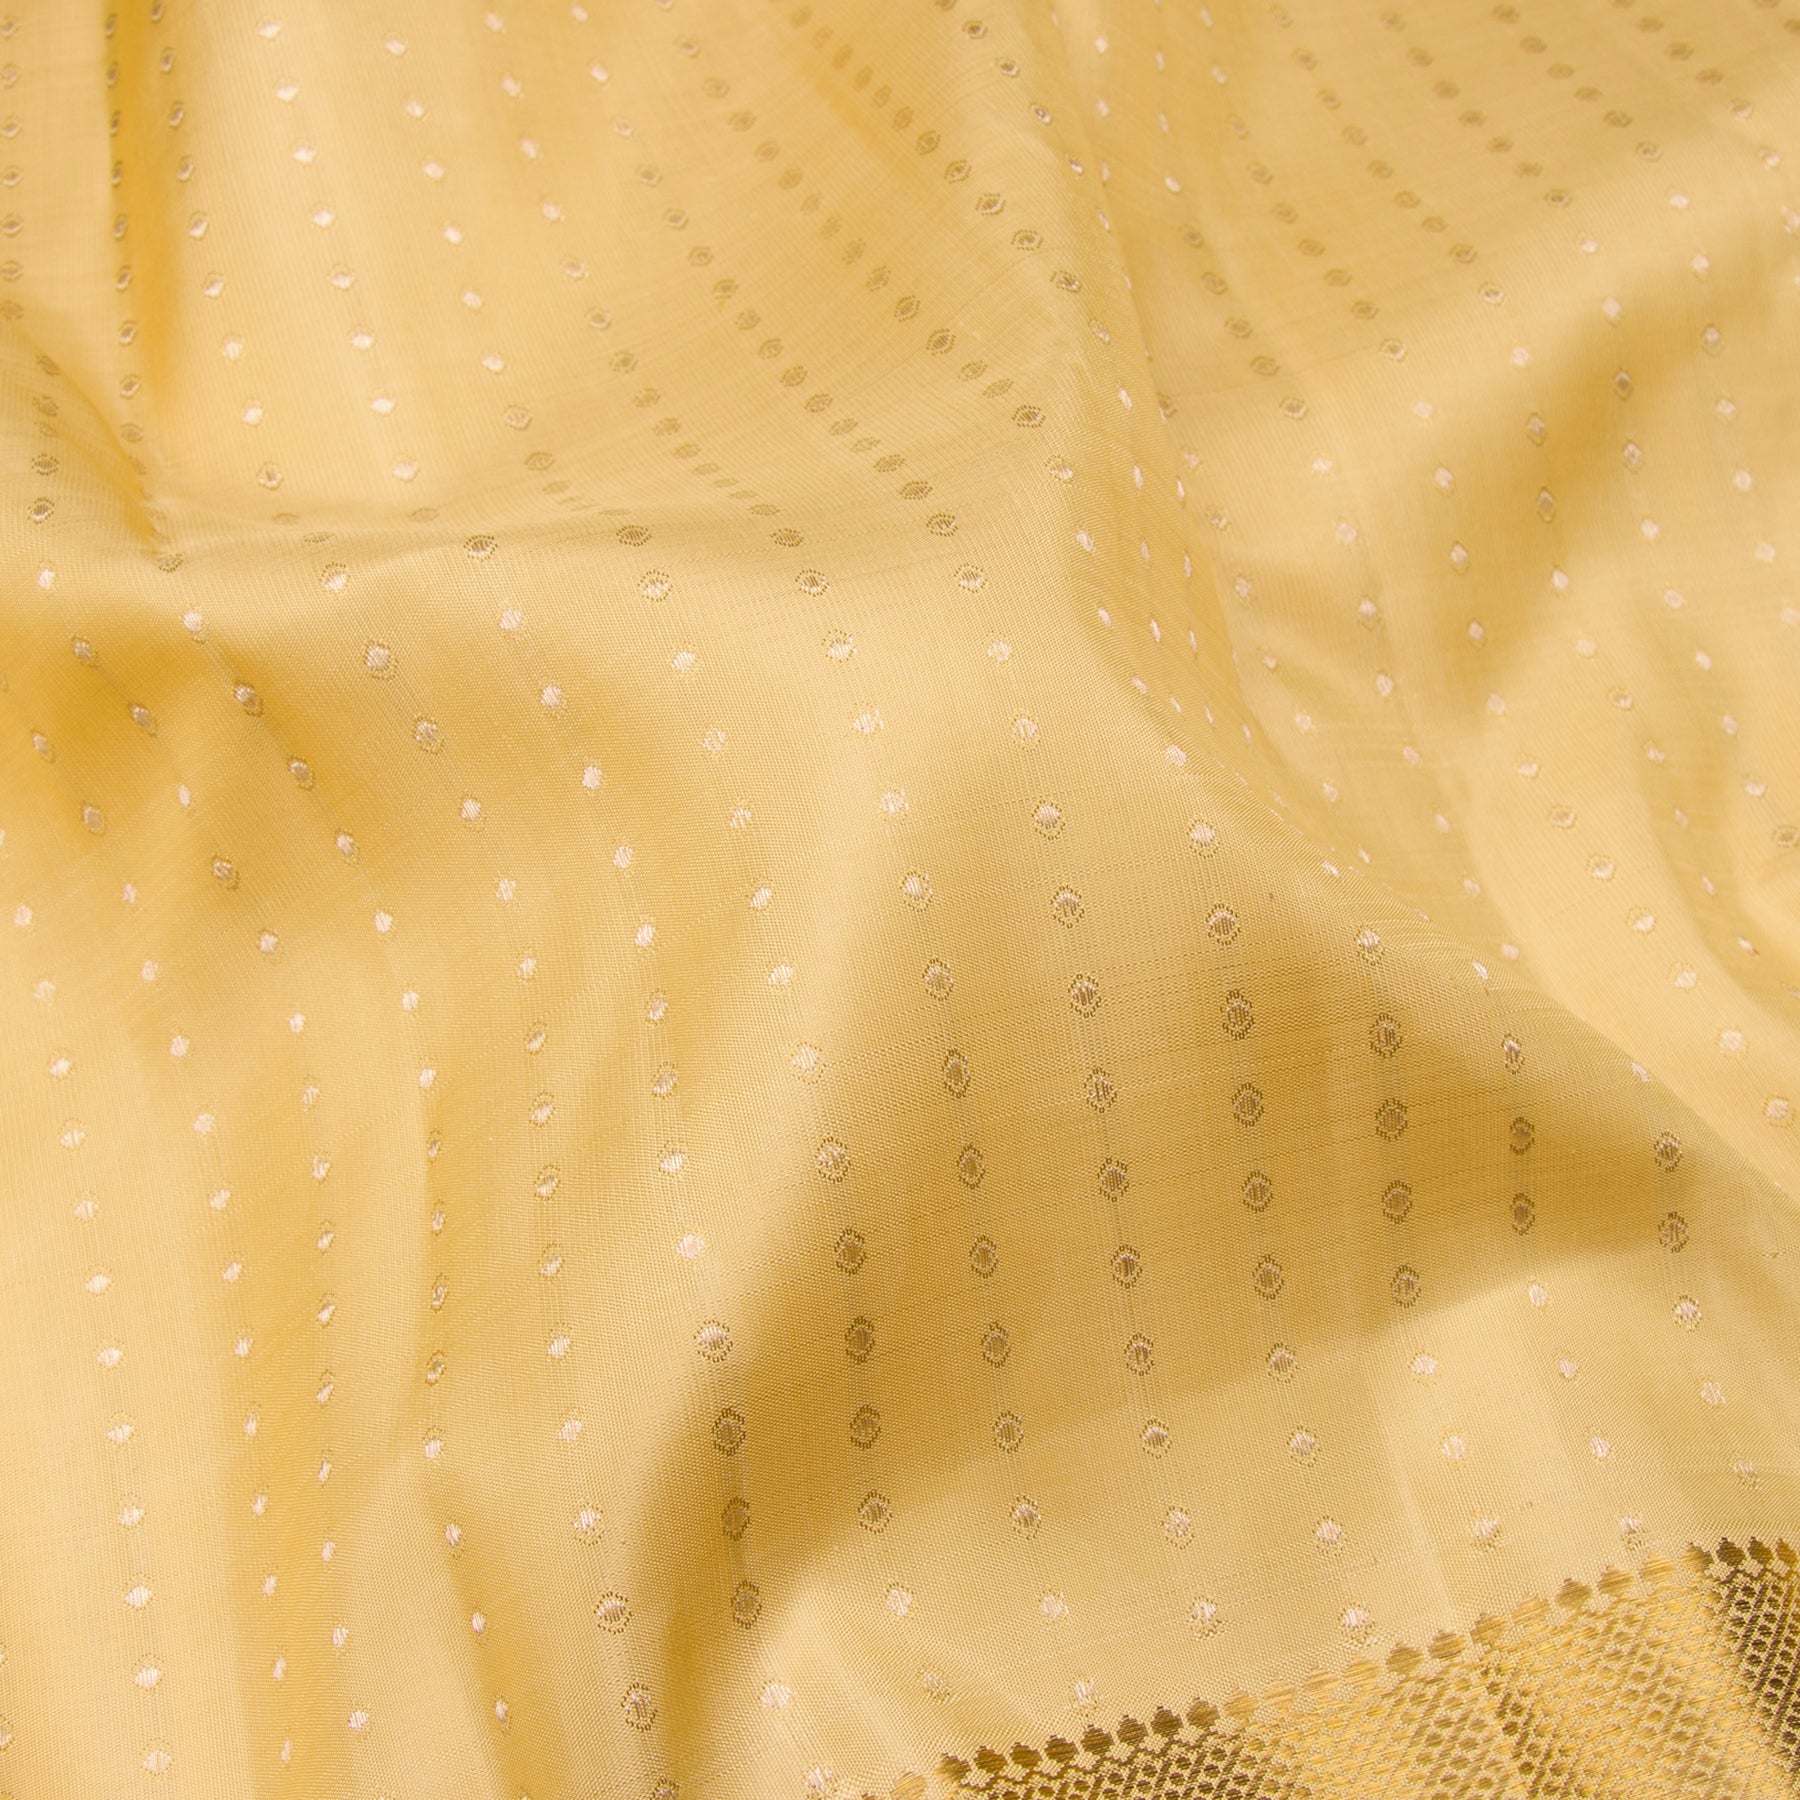 Kanakavalli Kanjivaram Silk Sari 23-595-HS001-12805 - Fabric View